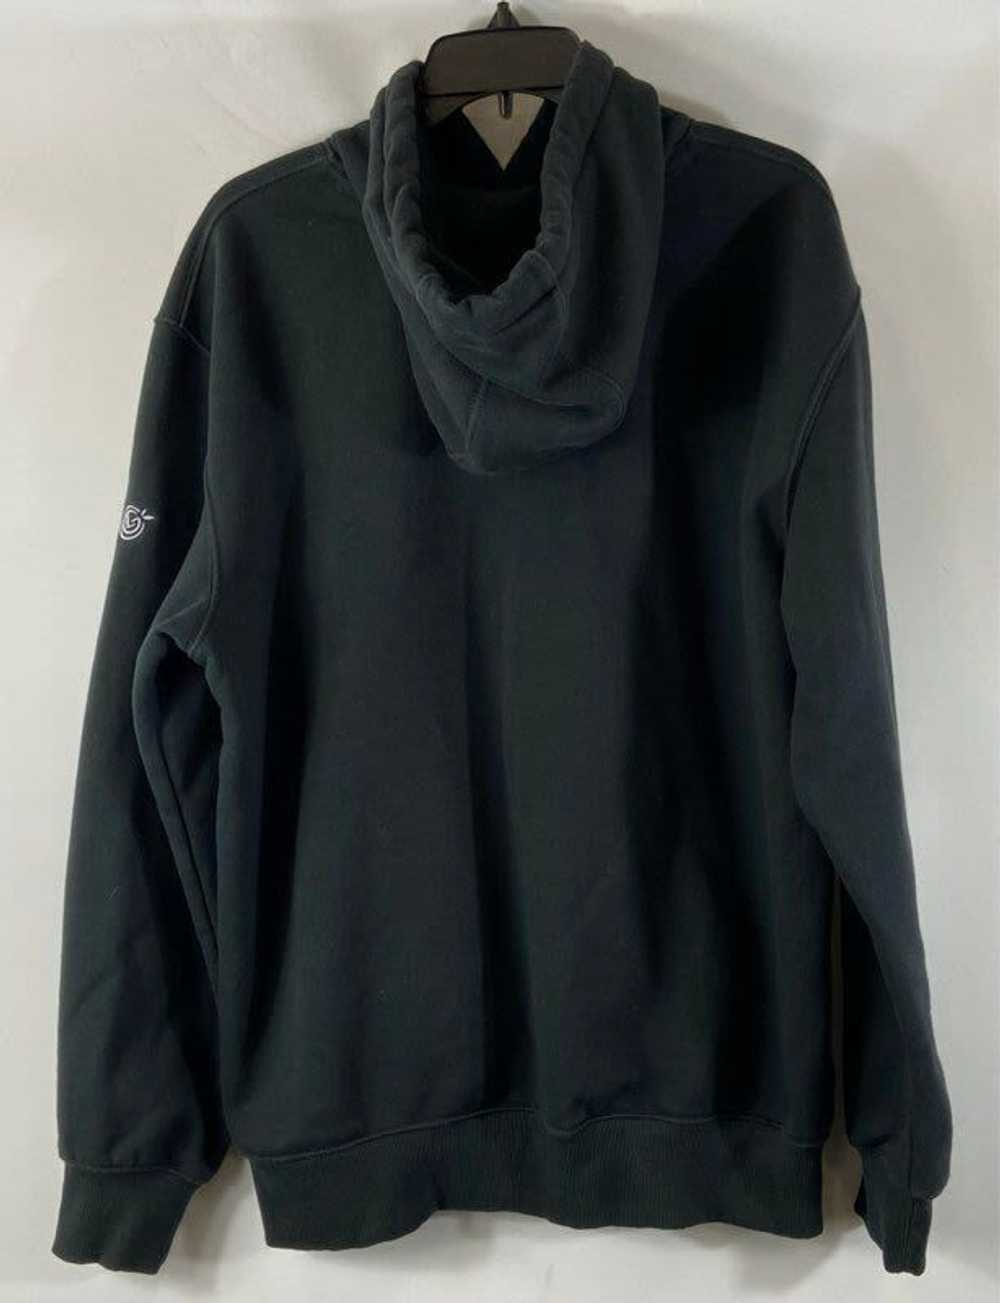 Carhartt Black Jacket - Size Large - image 2